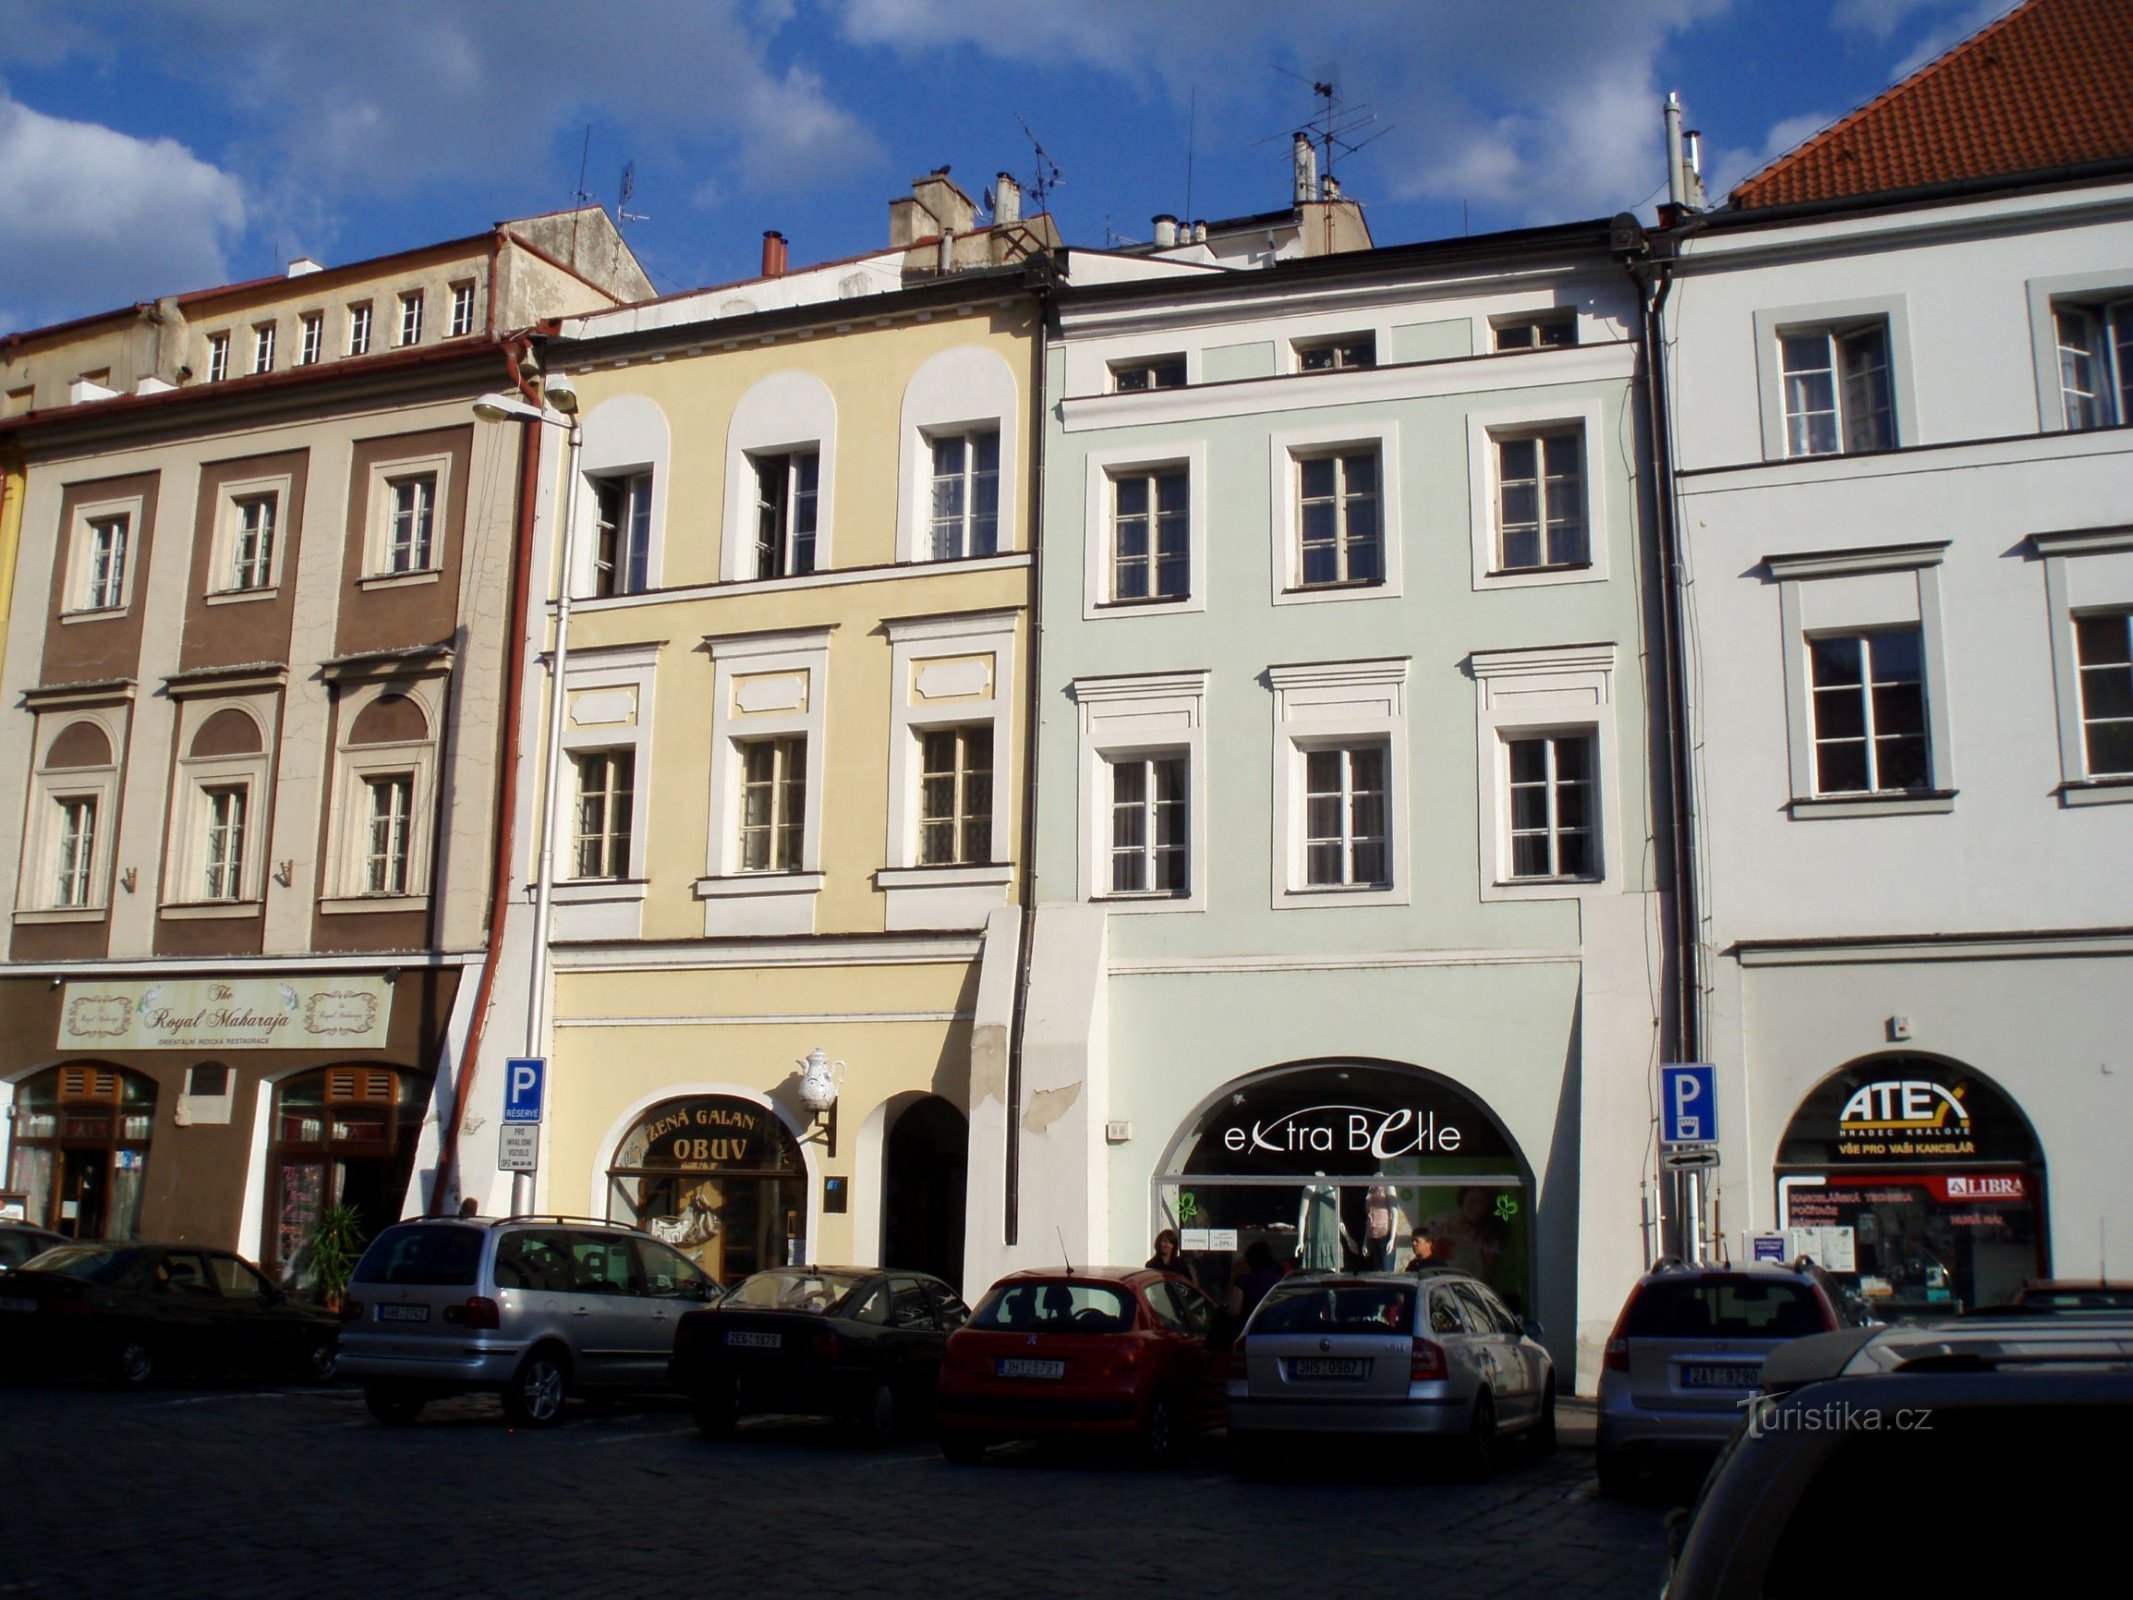 Velké náměstí No. 23-24 (Hradec Králové, 25.5.2012)